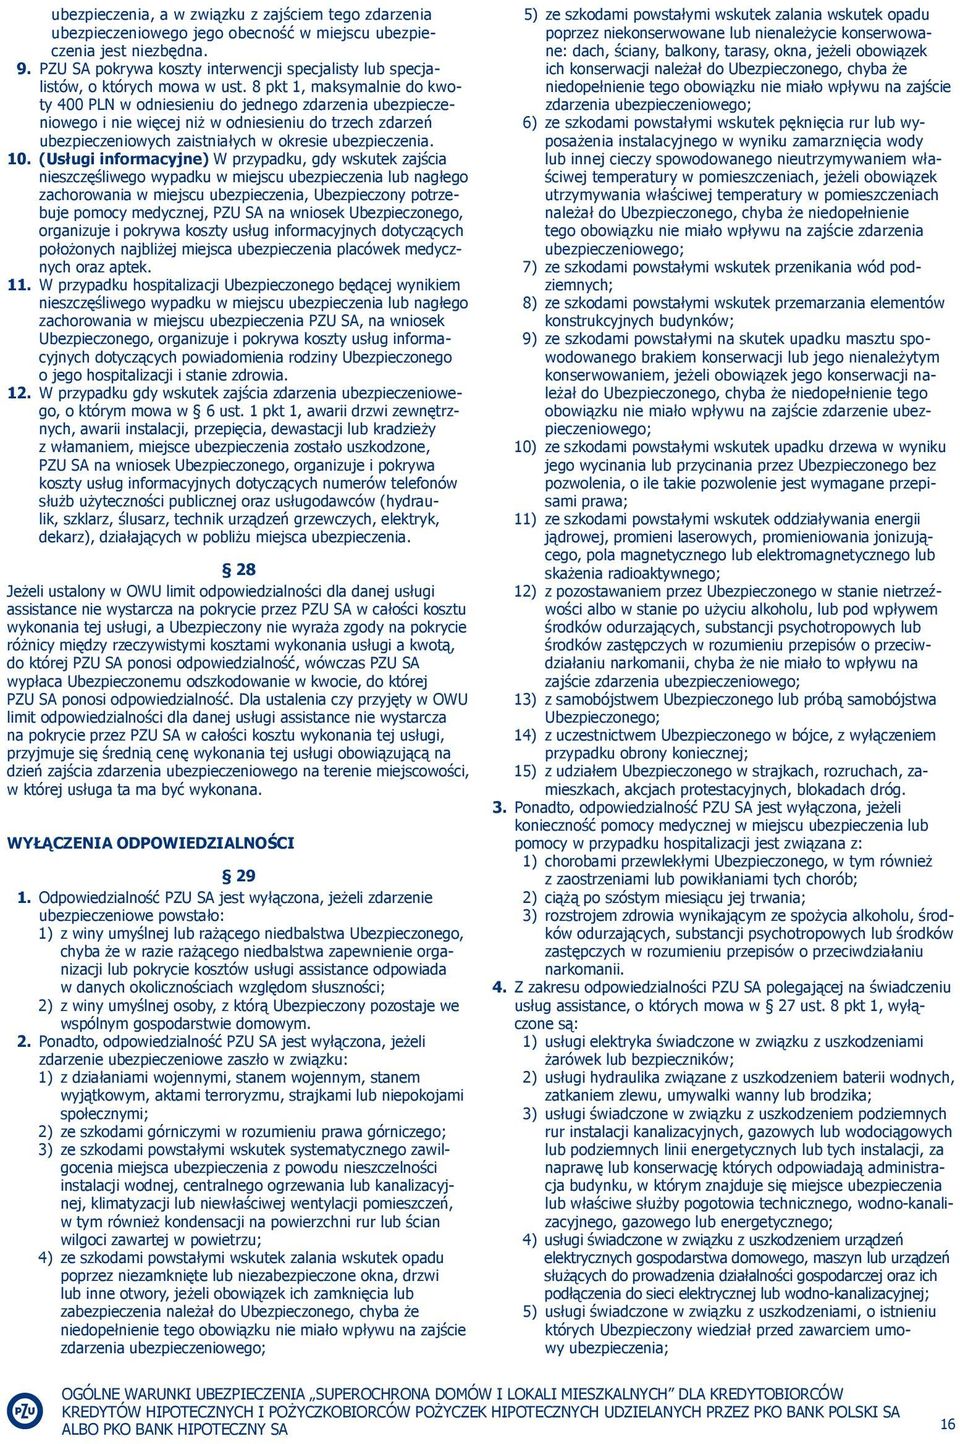 8 pkt 1, maksymalnie do kwoty 400 PLN w odniesieniu do jednego zdarzenia ubezpieczeniowego i nie więcej niż w odniesieniu do trzech zdarzeń ubezpieczeniowych zaistniałych w okresie ubezpieczenia. 10.